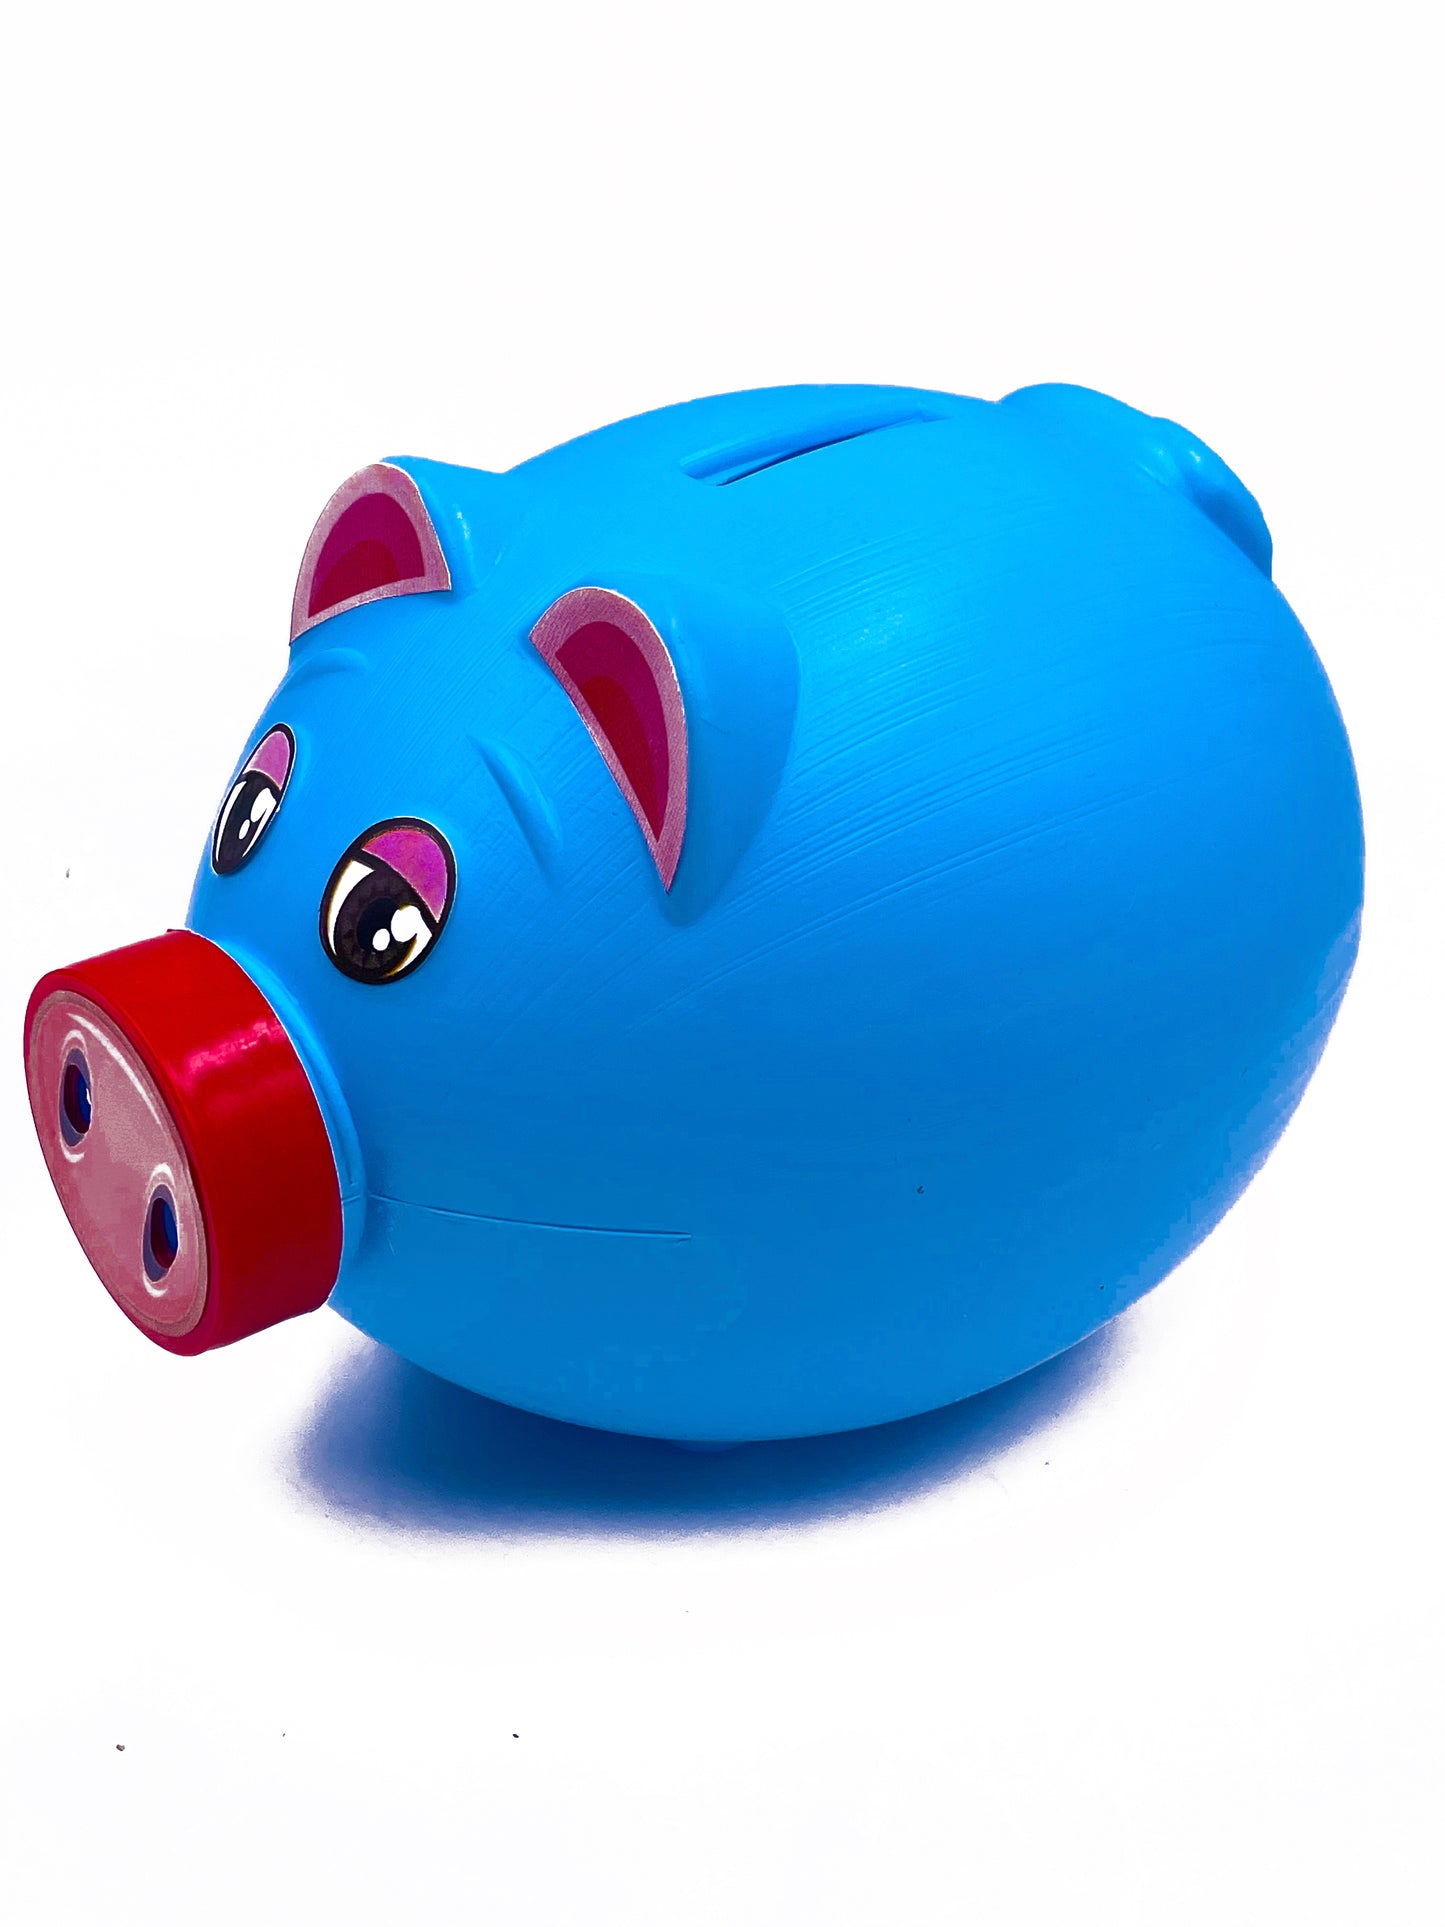 Piggy bank coin bank